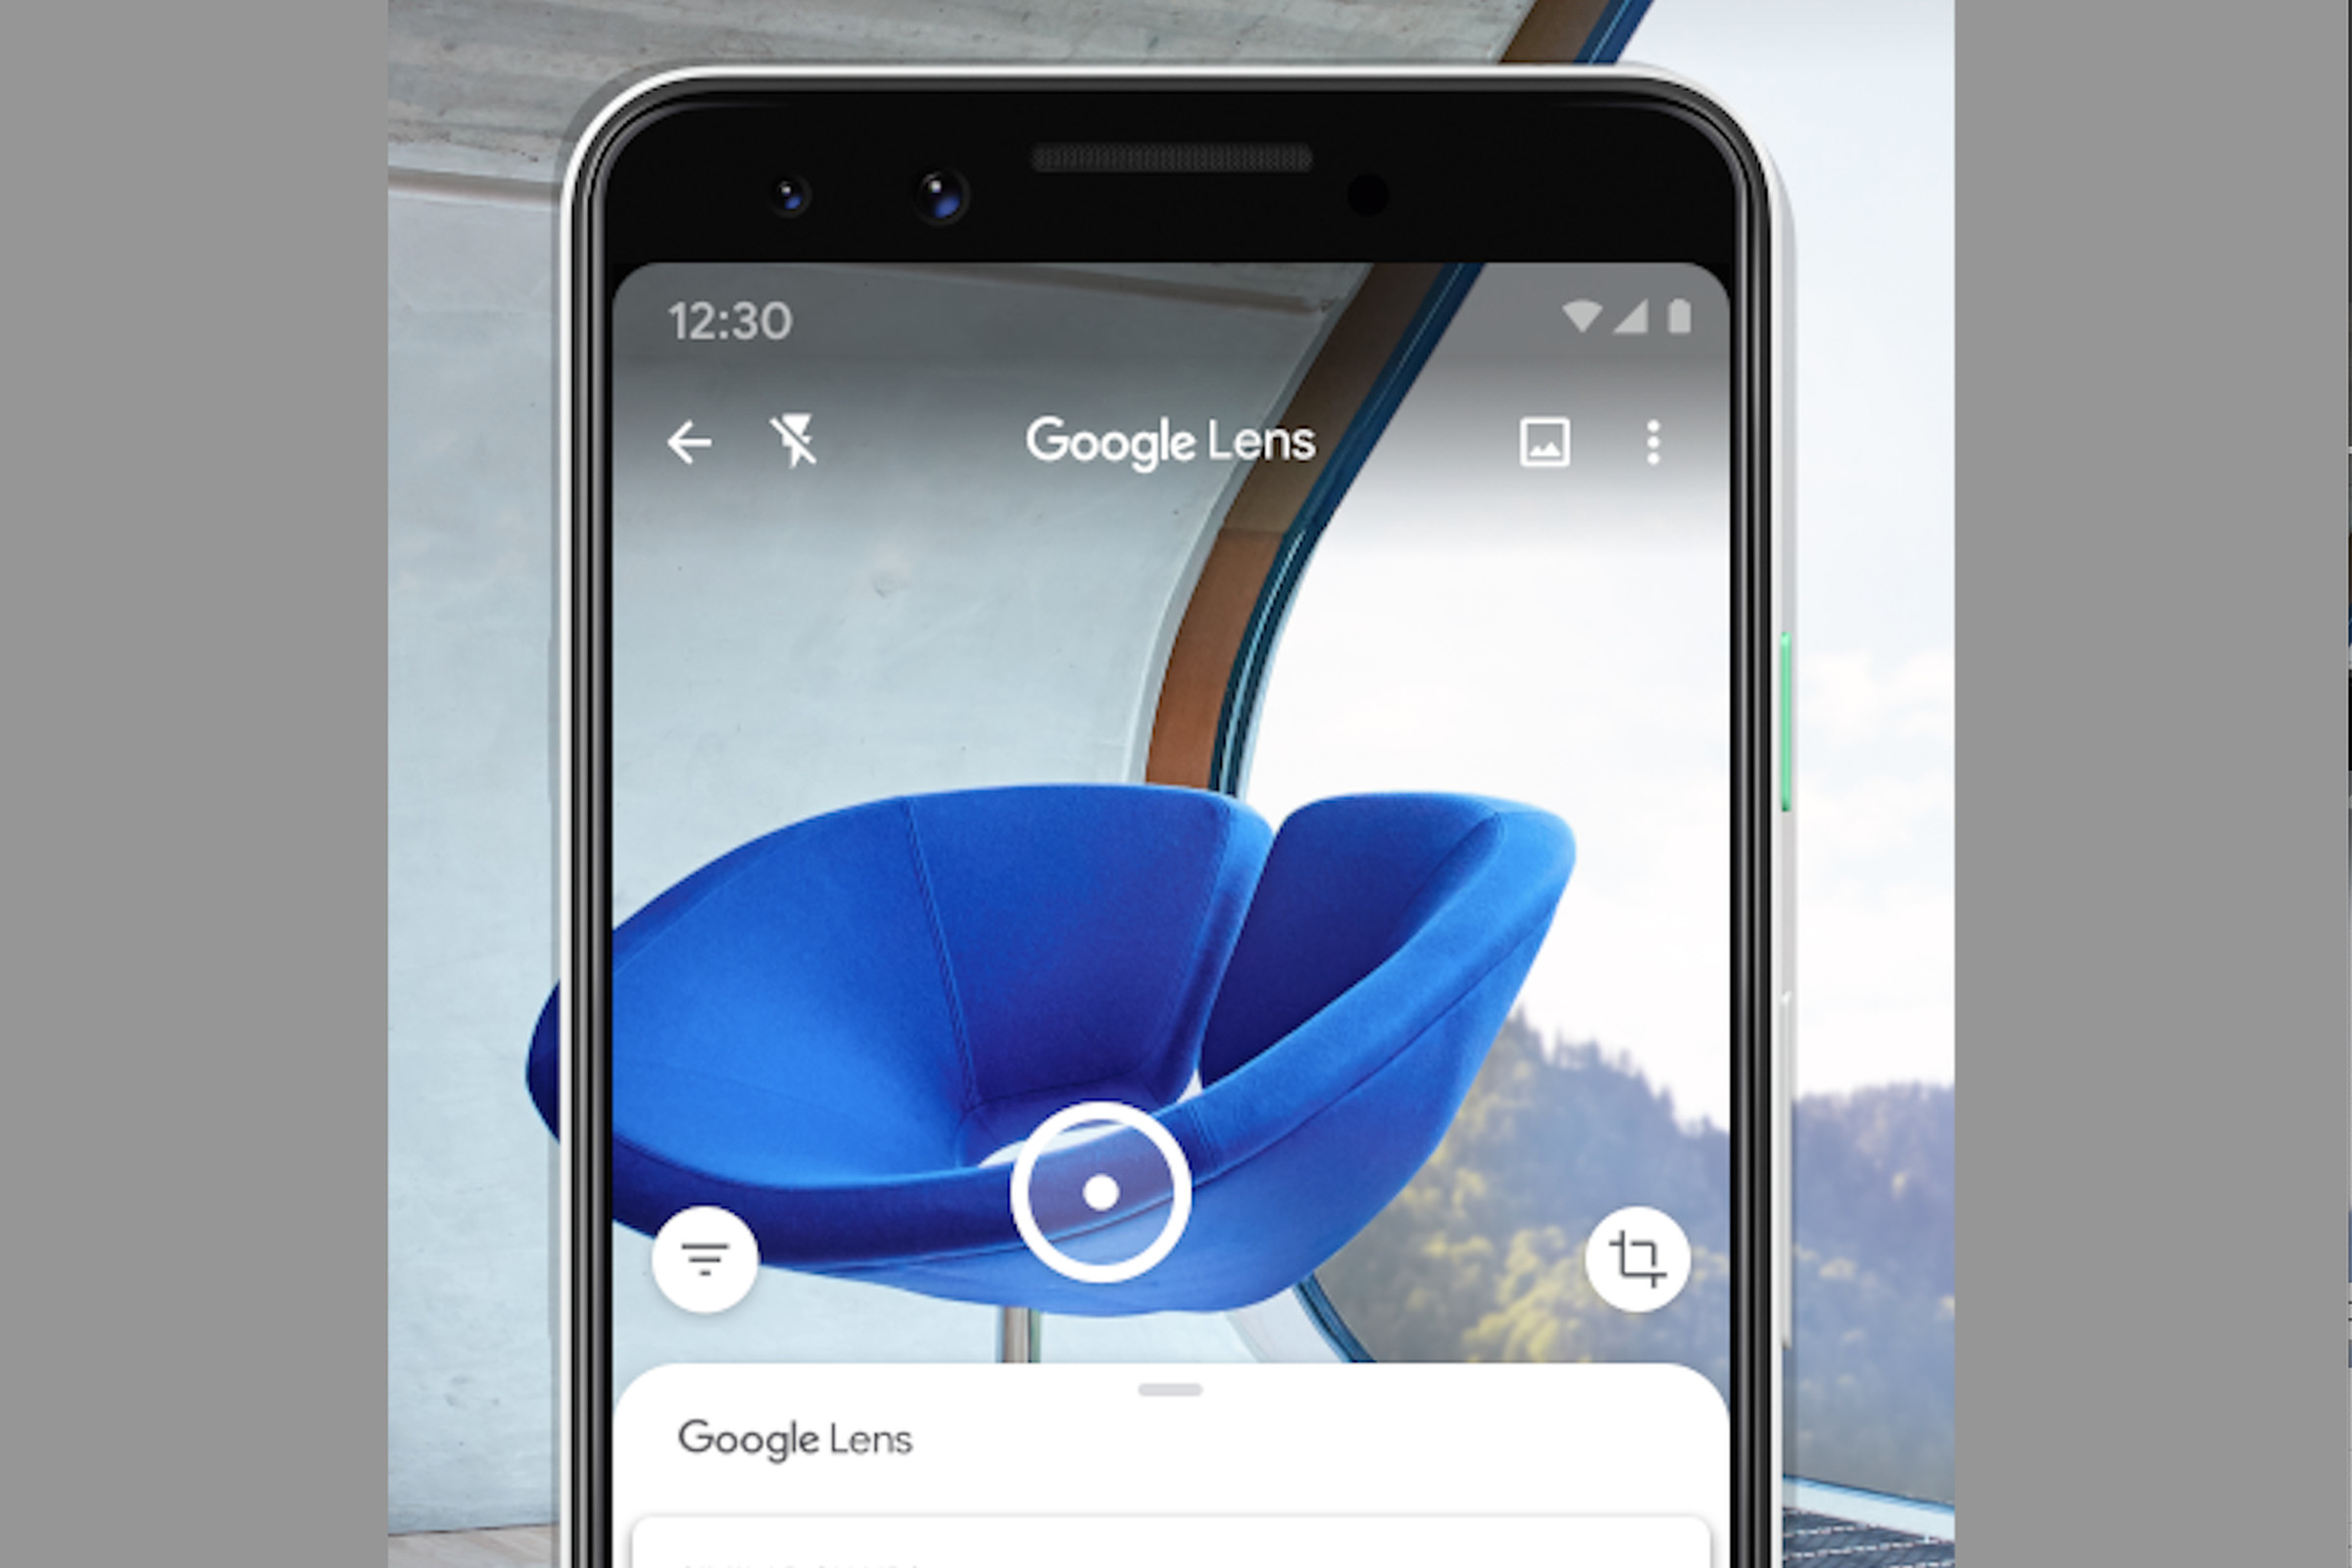 Blue chair viewed through a phone using Google Lens.